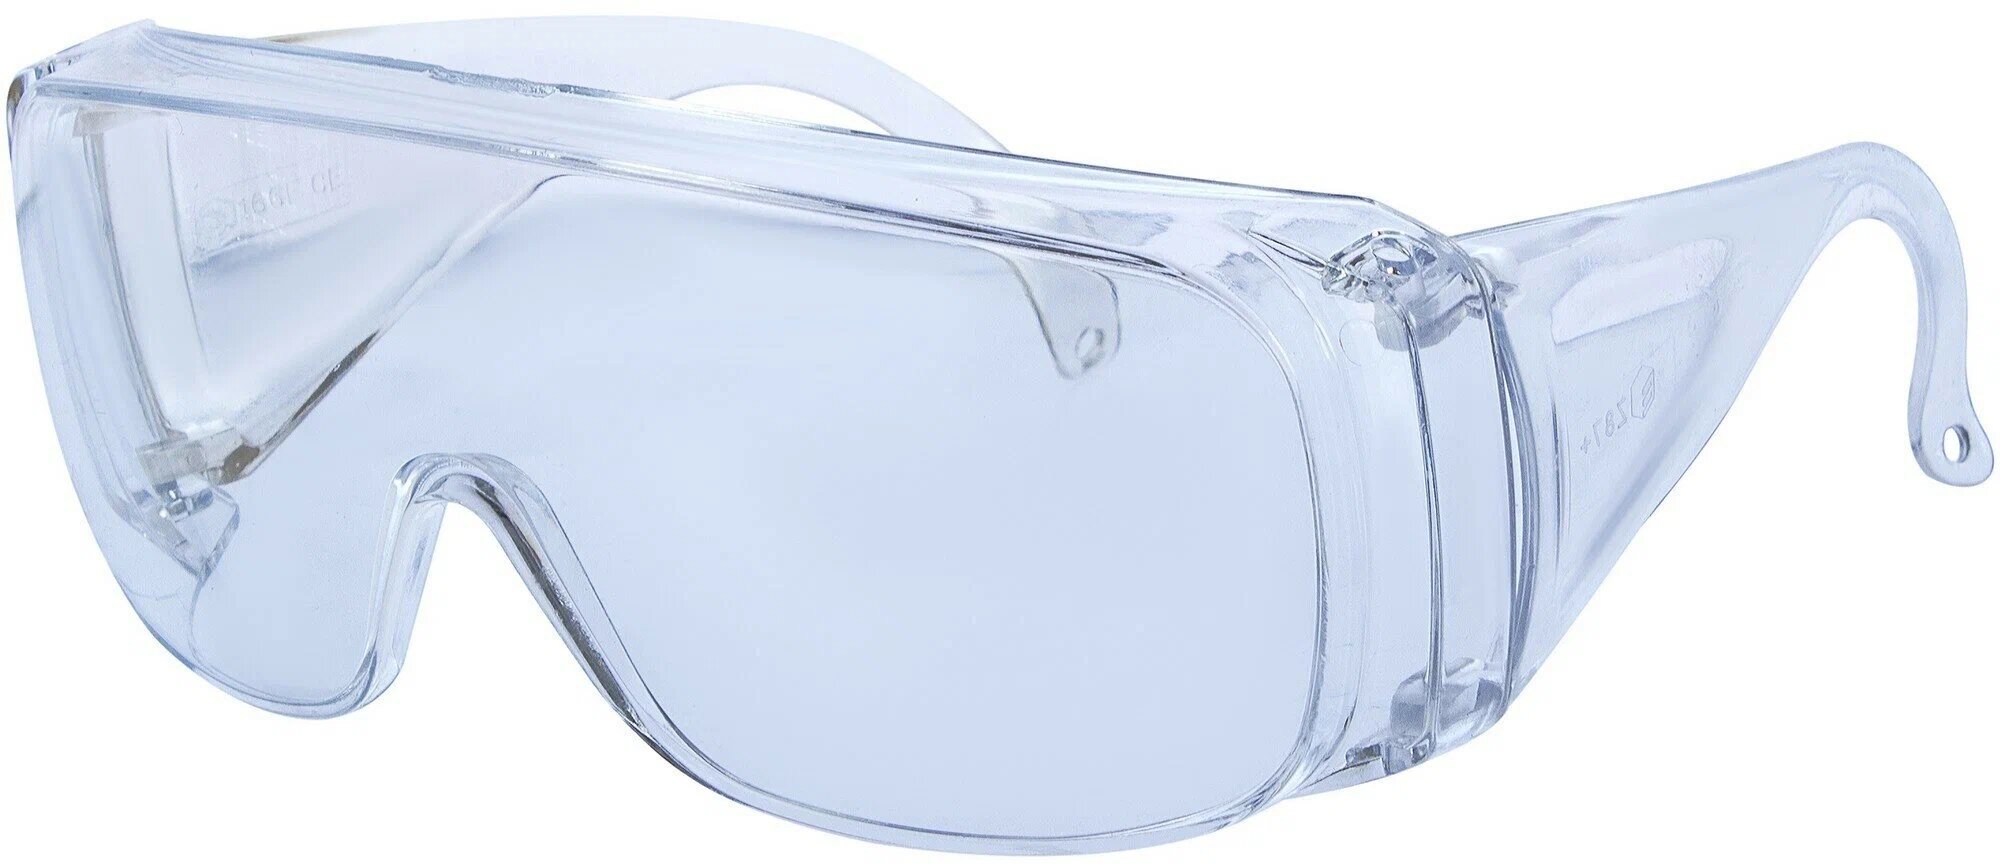 Очки защитные открытого типа прозрачные ударопрочный поликарбонат 5 шт